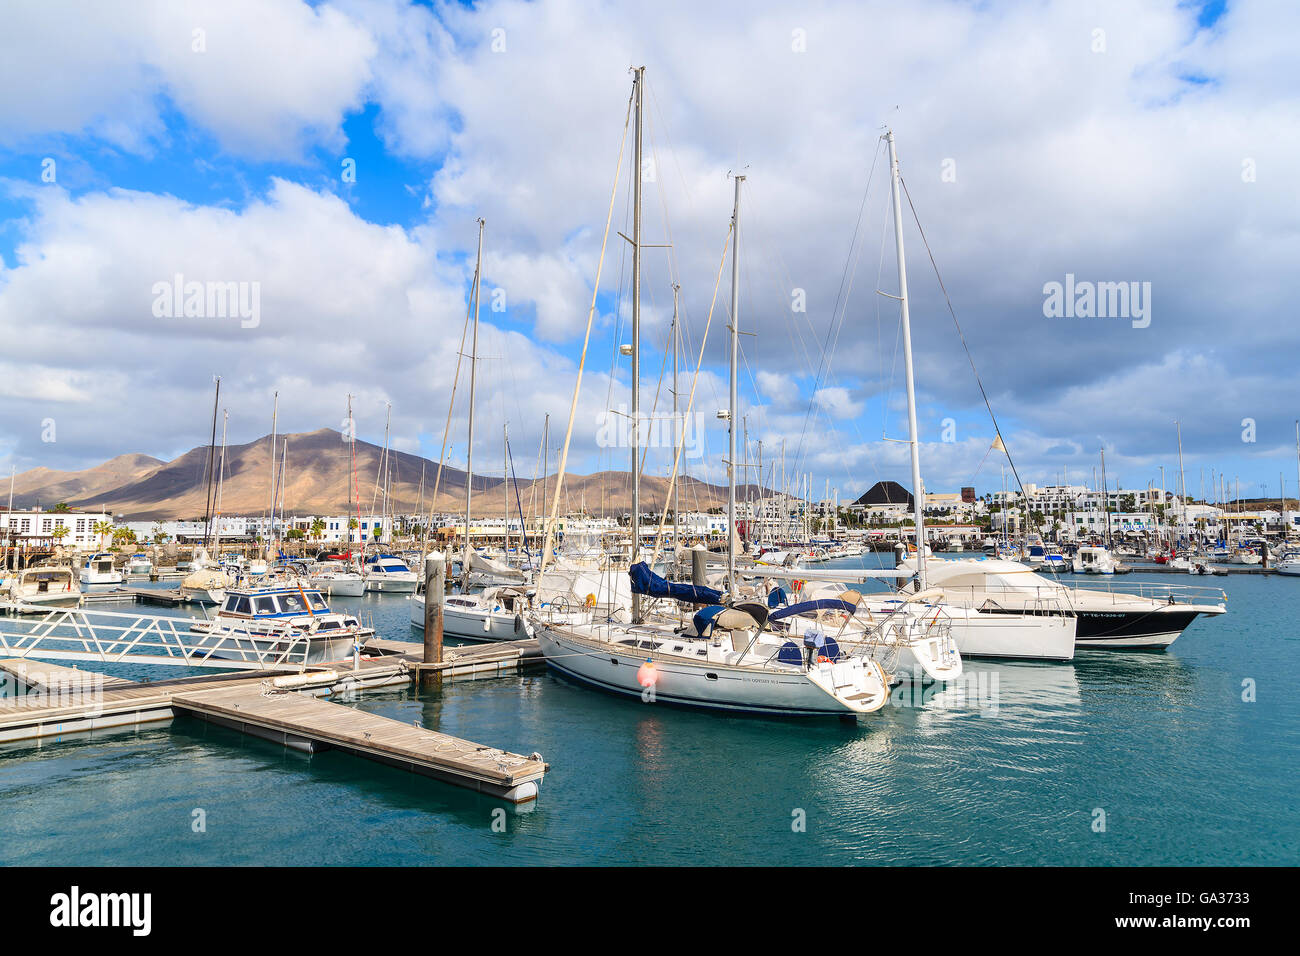 MARINA RUBICON, Insel LANZAROTE-JAN 17, 2015: Yacht Boote festmachen im Hafen Rubicon. Kanarischen Inseln sind sehr beliebtes Urlaubsziel aufgrund der sonnigen tropisches Klima das ganze Jahr. Stockfoto